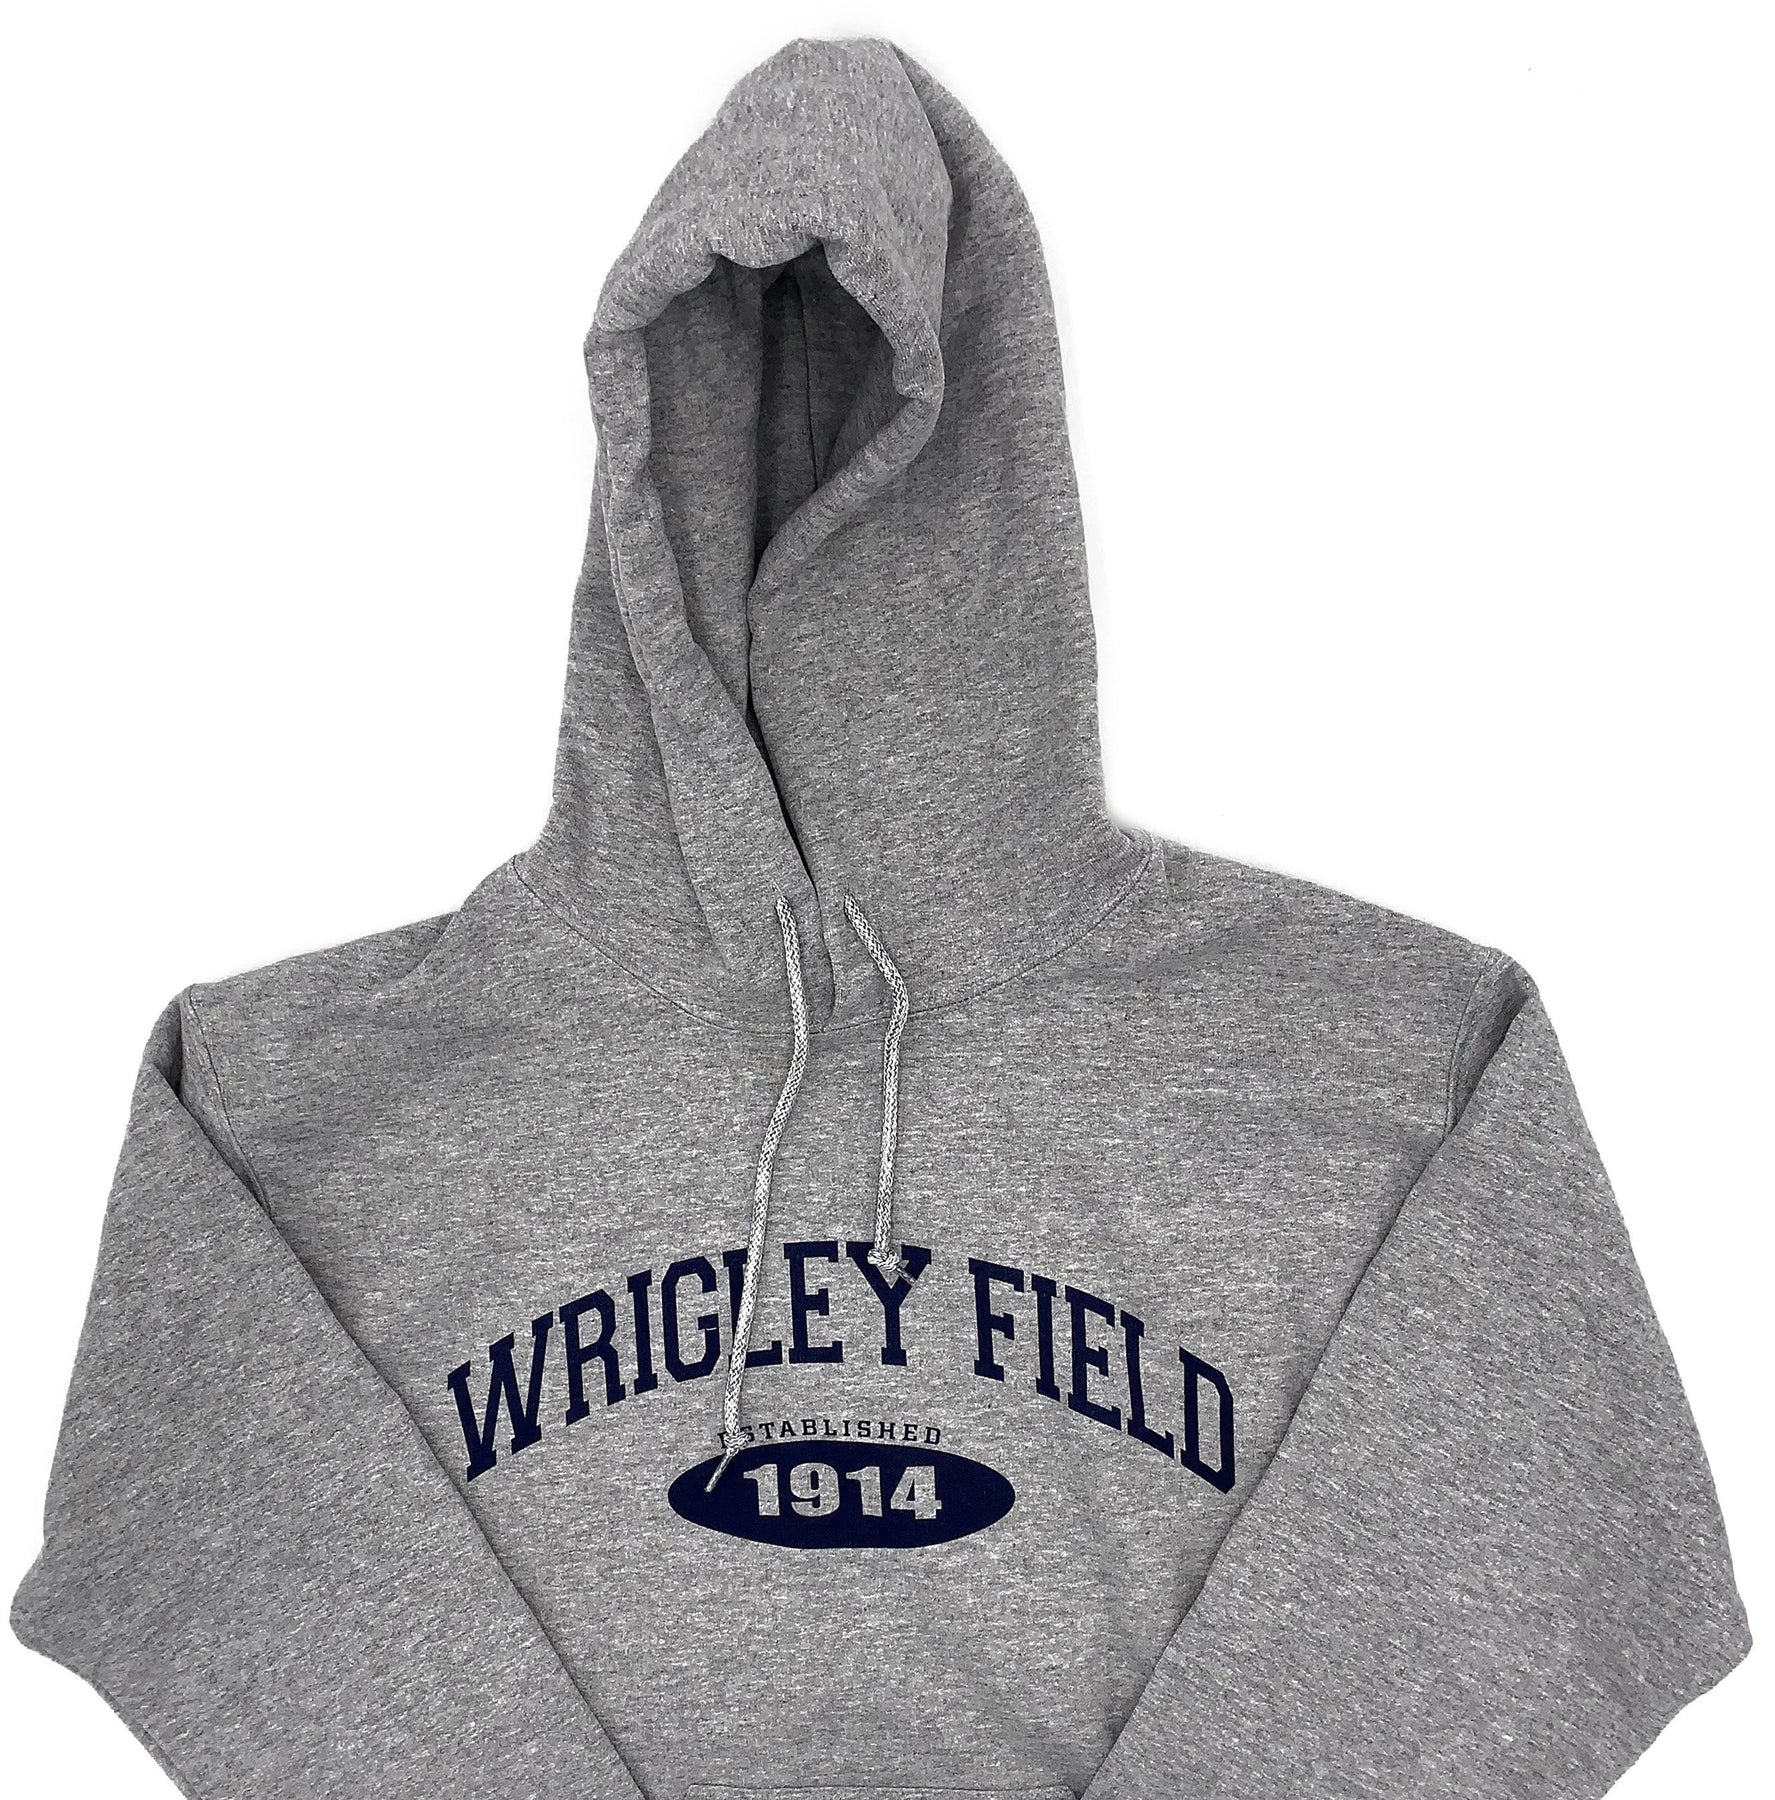 Art Flo Shirt & Lettering Wrigley Field Men's Gray Hoodie M